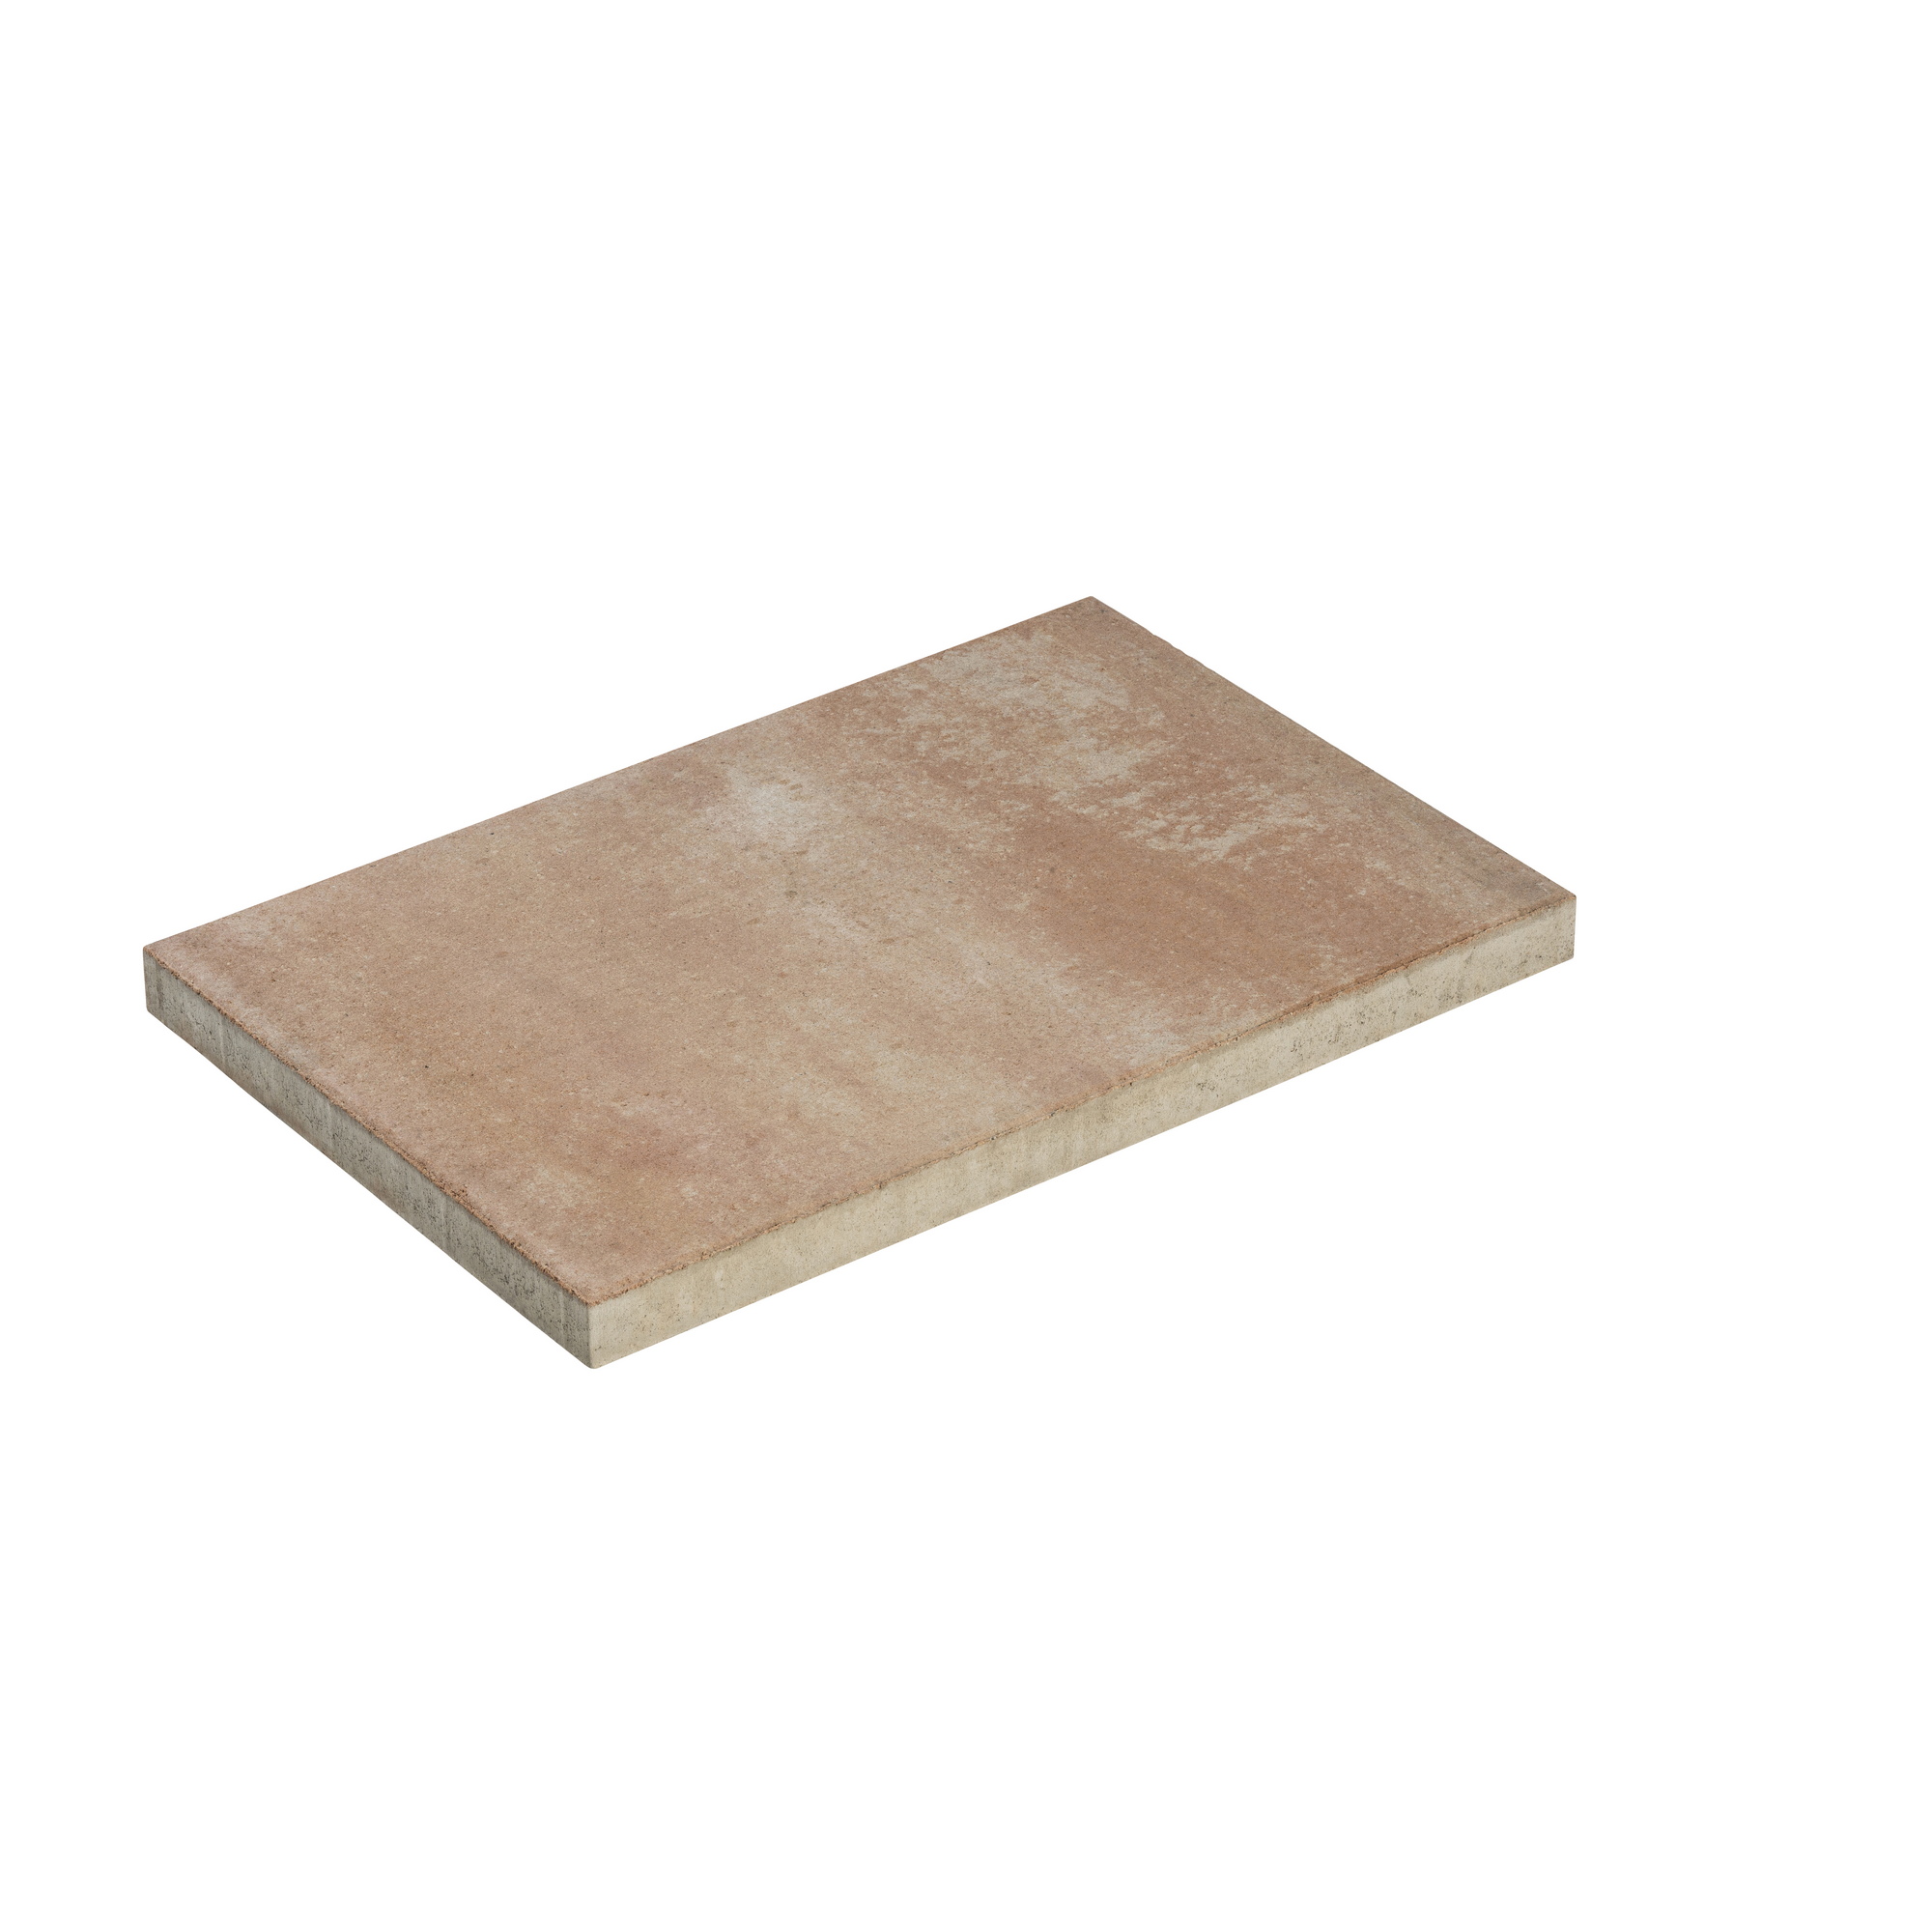 Terrassenplatte 'T-Court Solid' Beton sandstein 60 x 40 x 4 cm + product picture